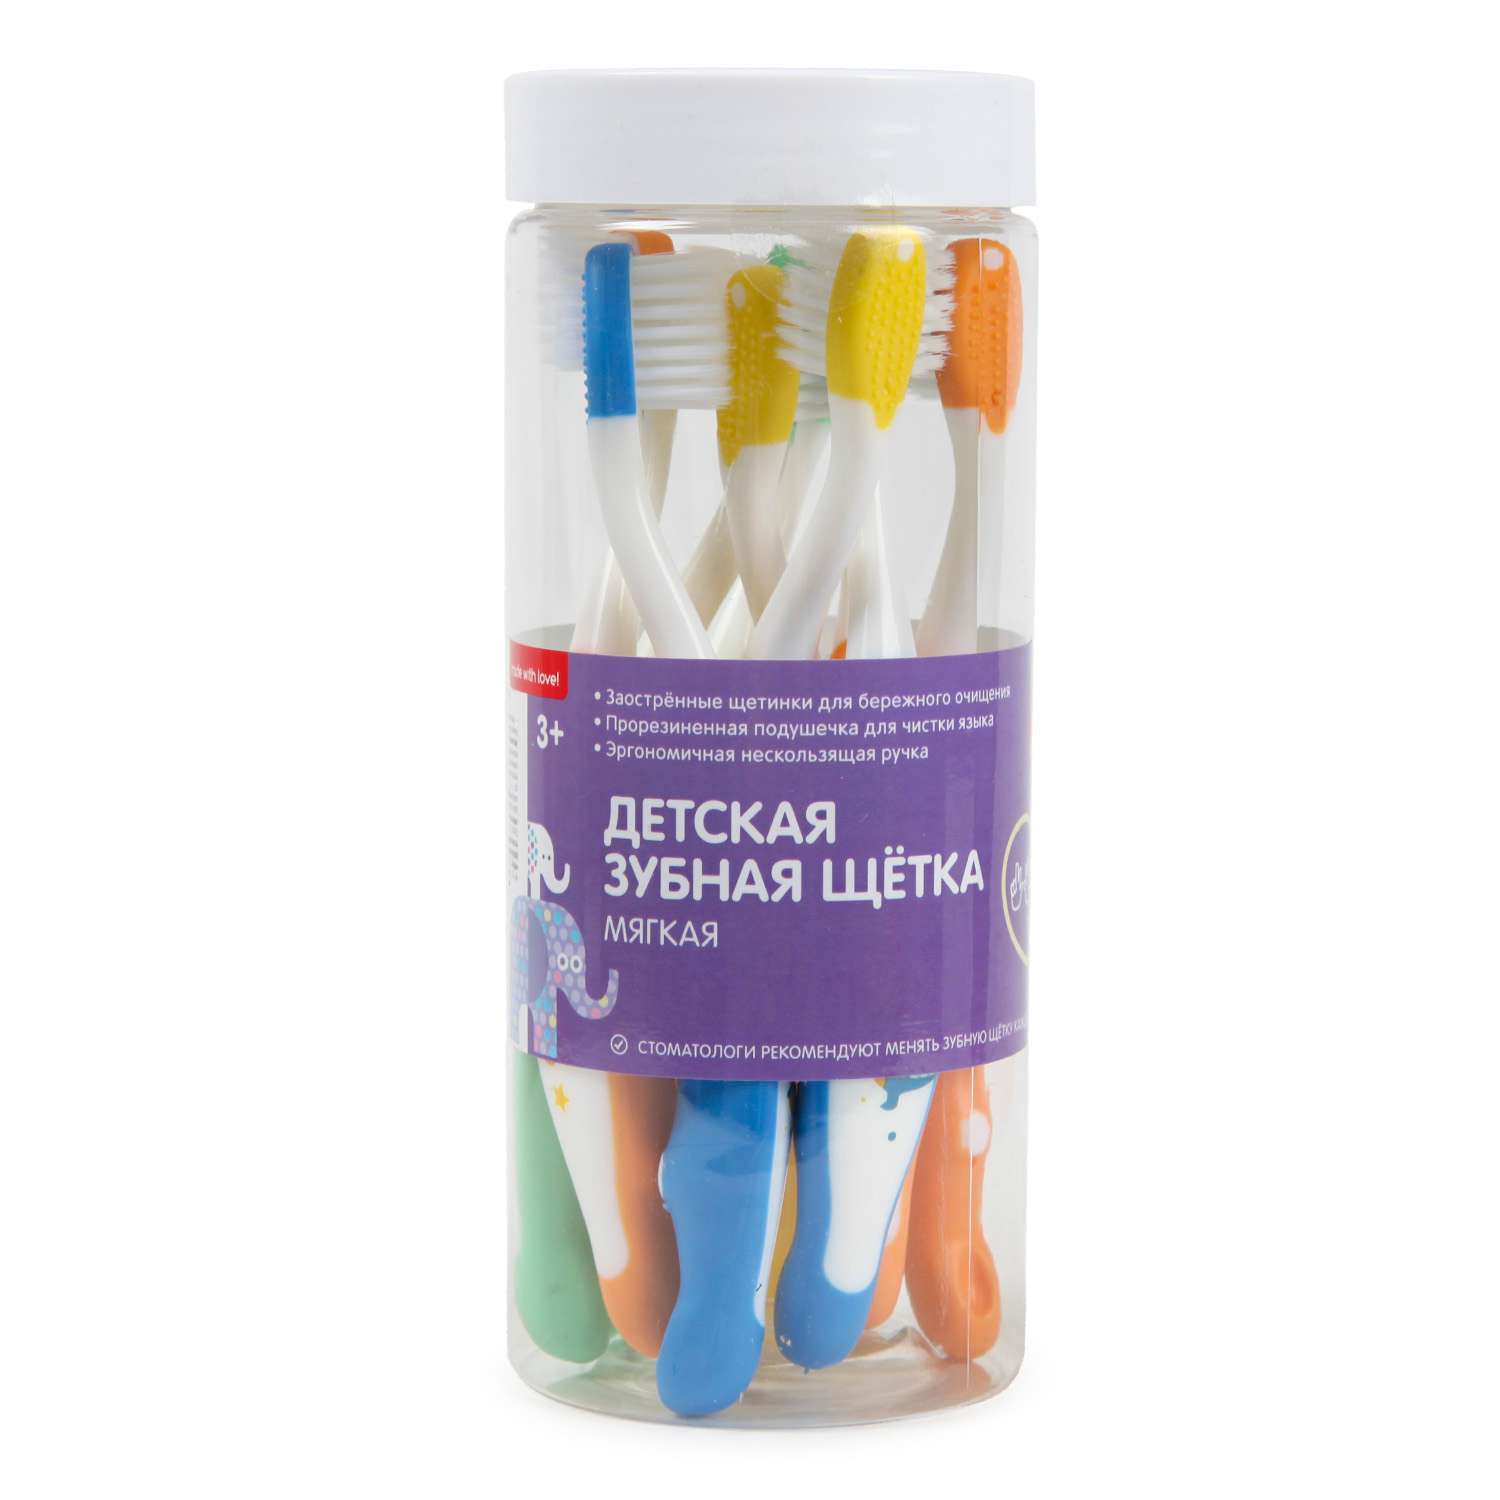 Набор зубных щёток BabyGo для детей 8шт CE-MBS24 - фото 2